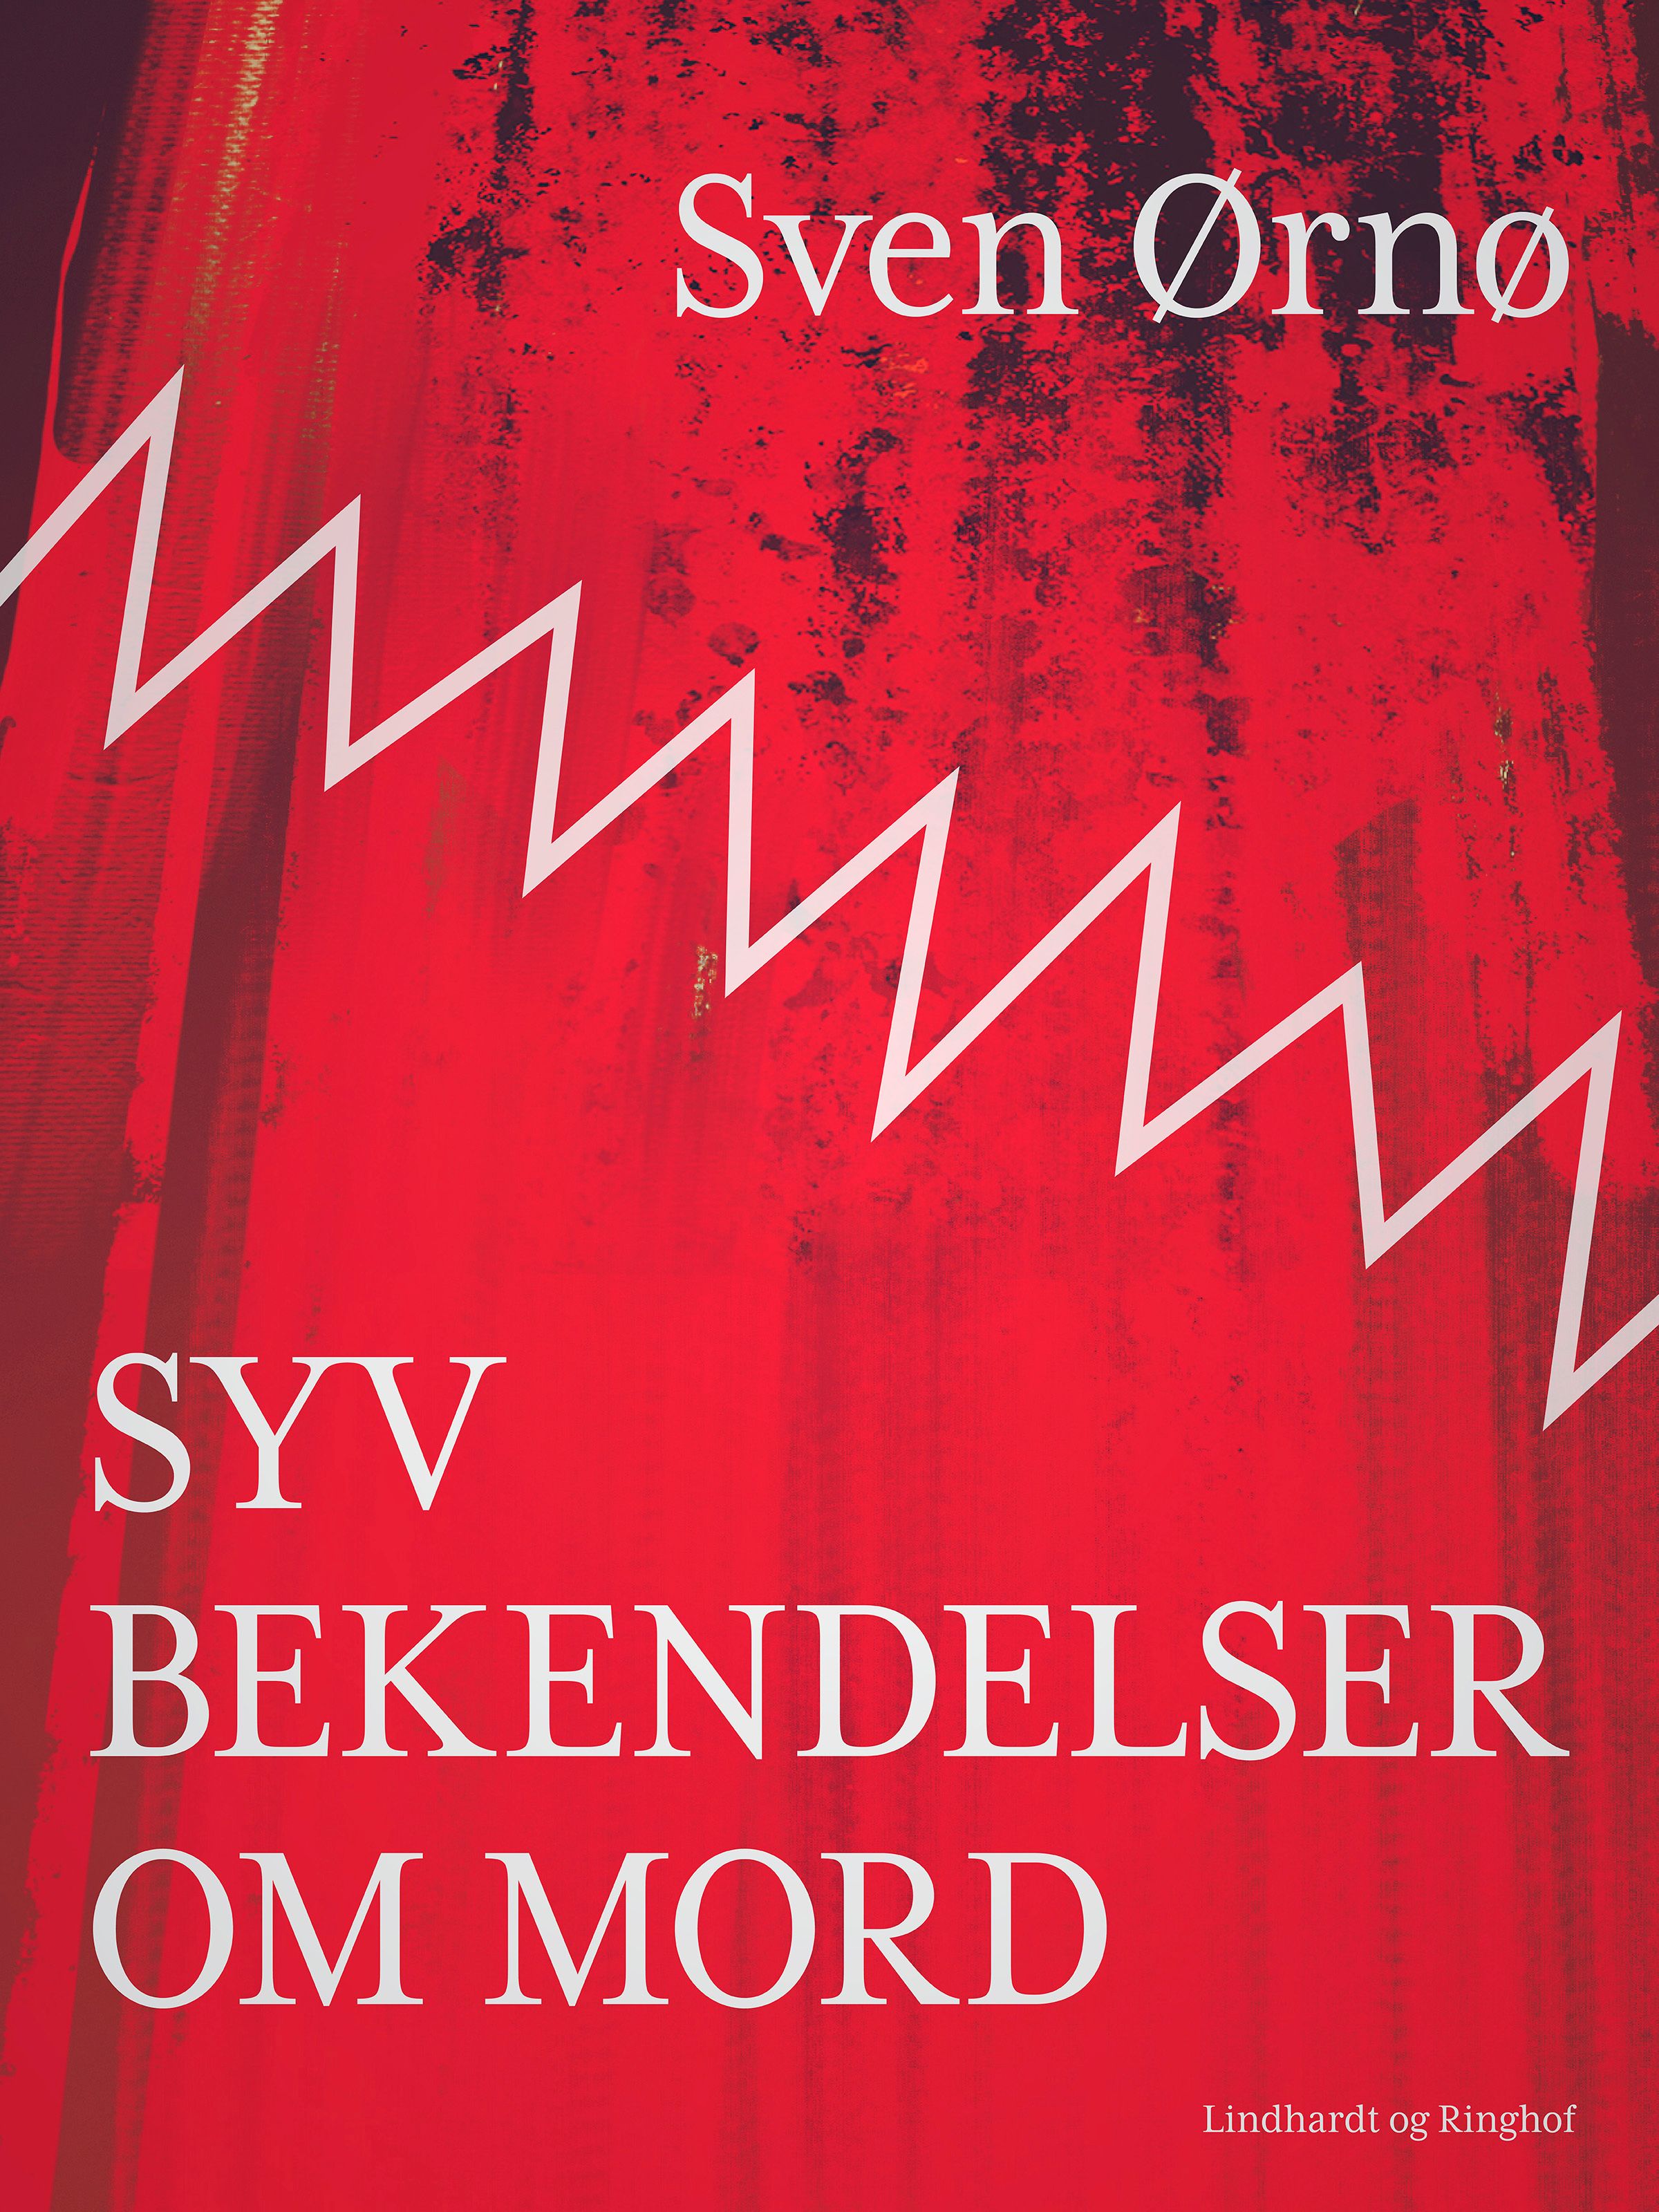 Syv bekendelser om mord, ljudbok av Sven Ørnø